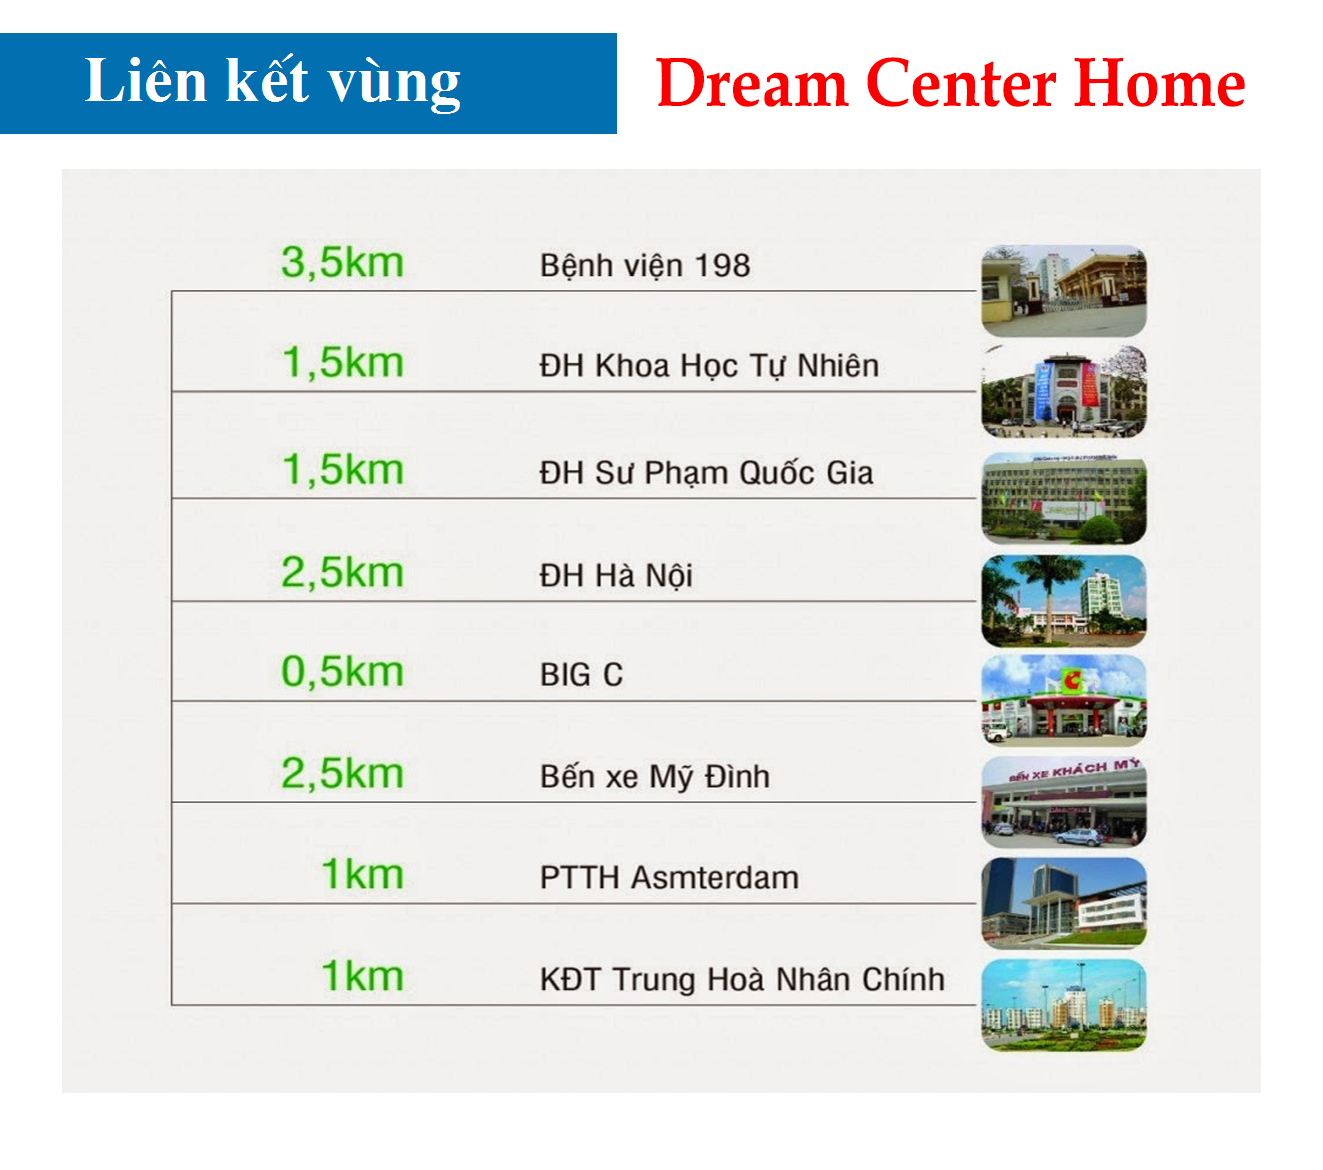 lien-ket-vung-dream-center-home